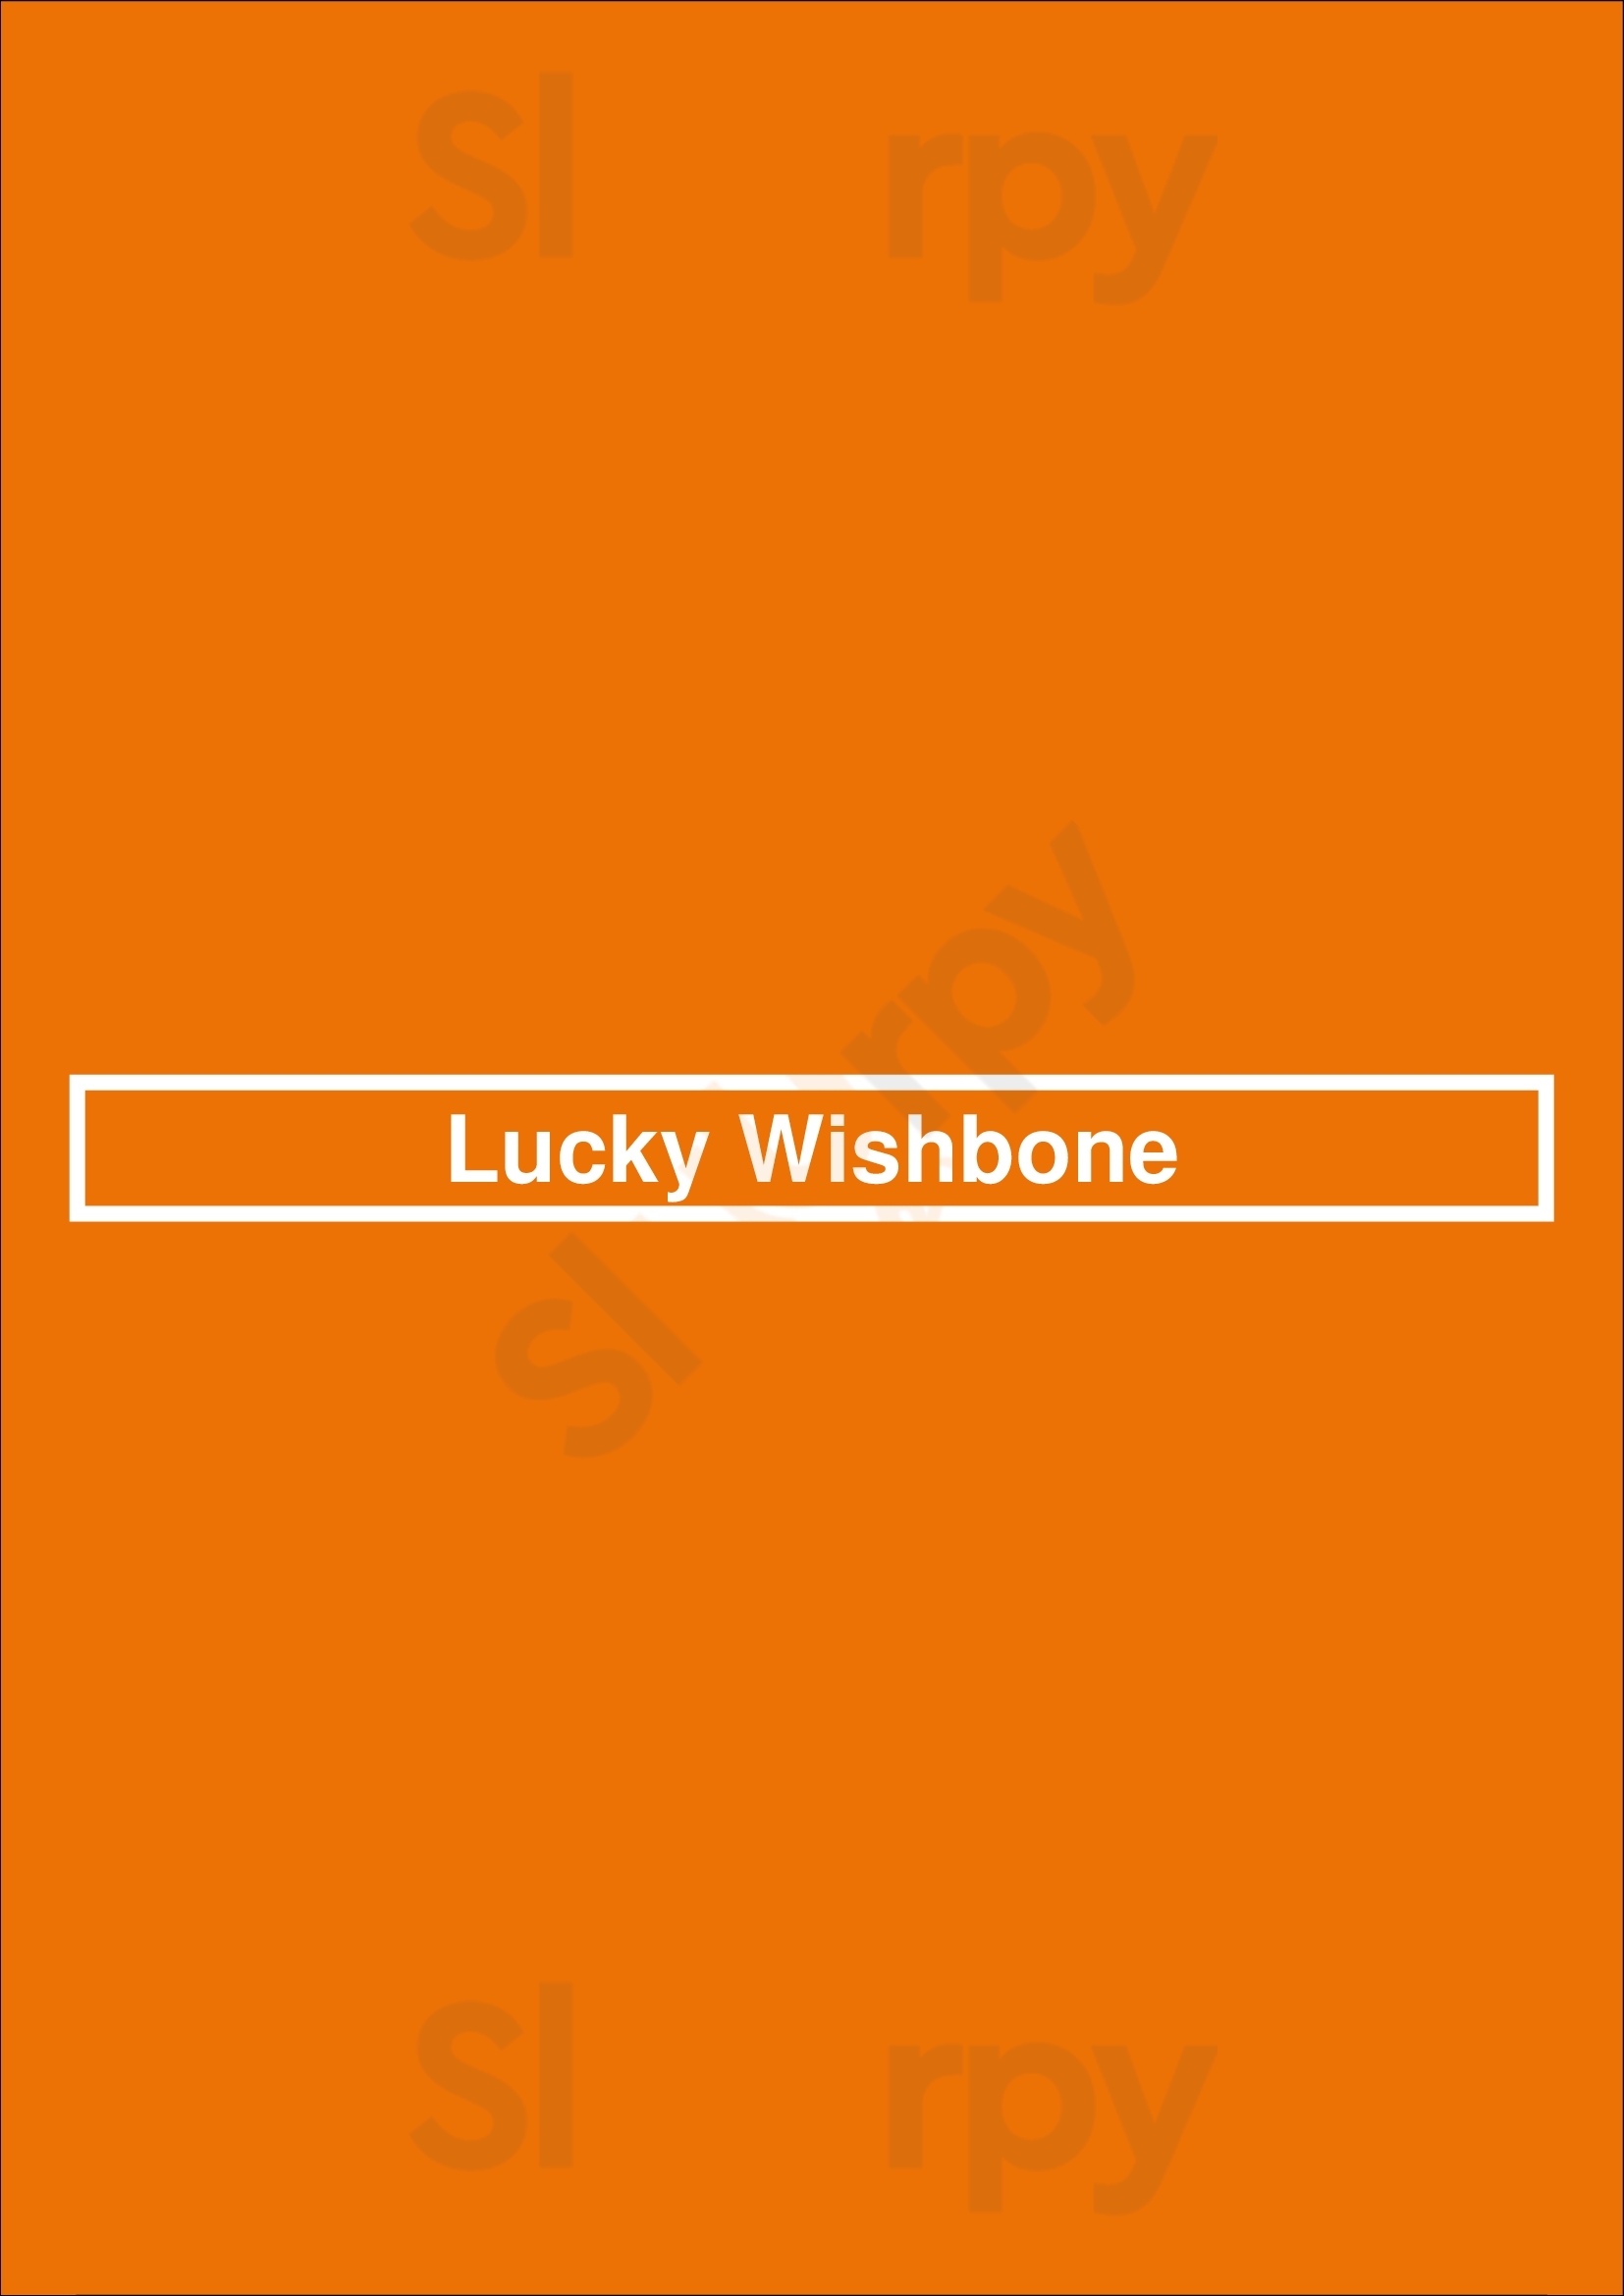 Lucky Wishbone Tucson Menu - 1